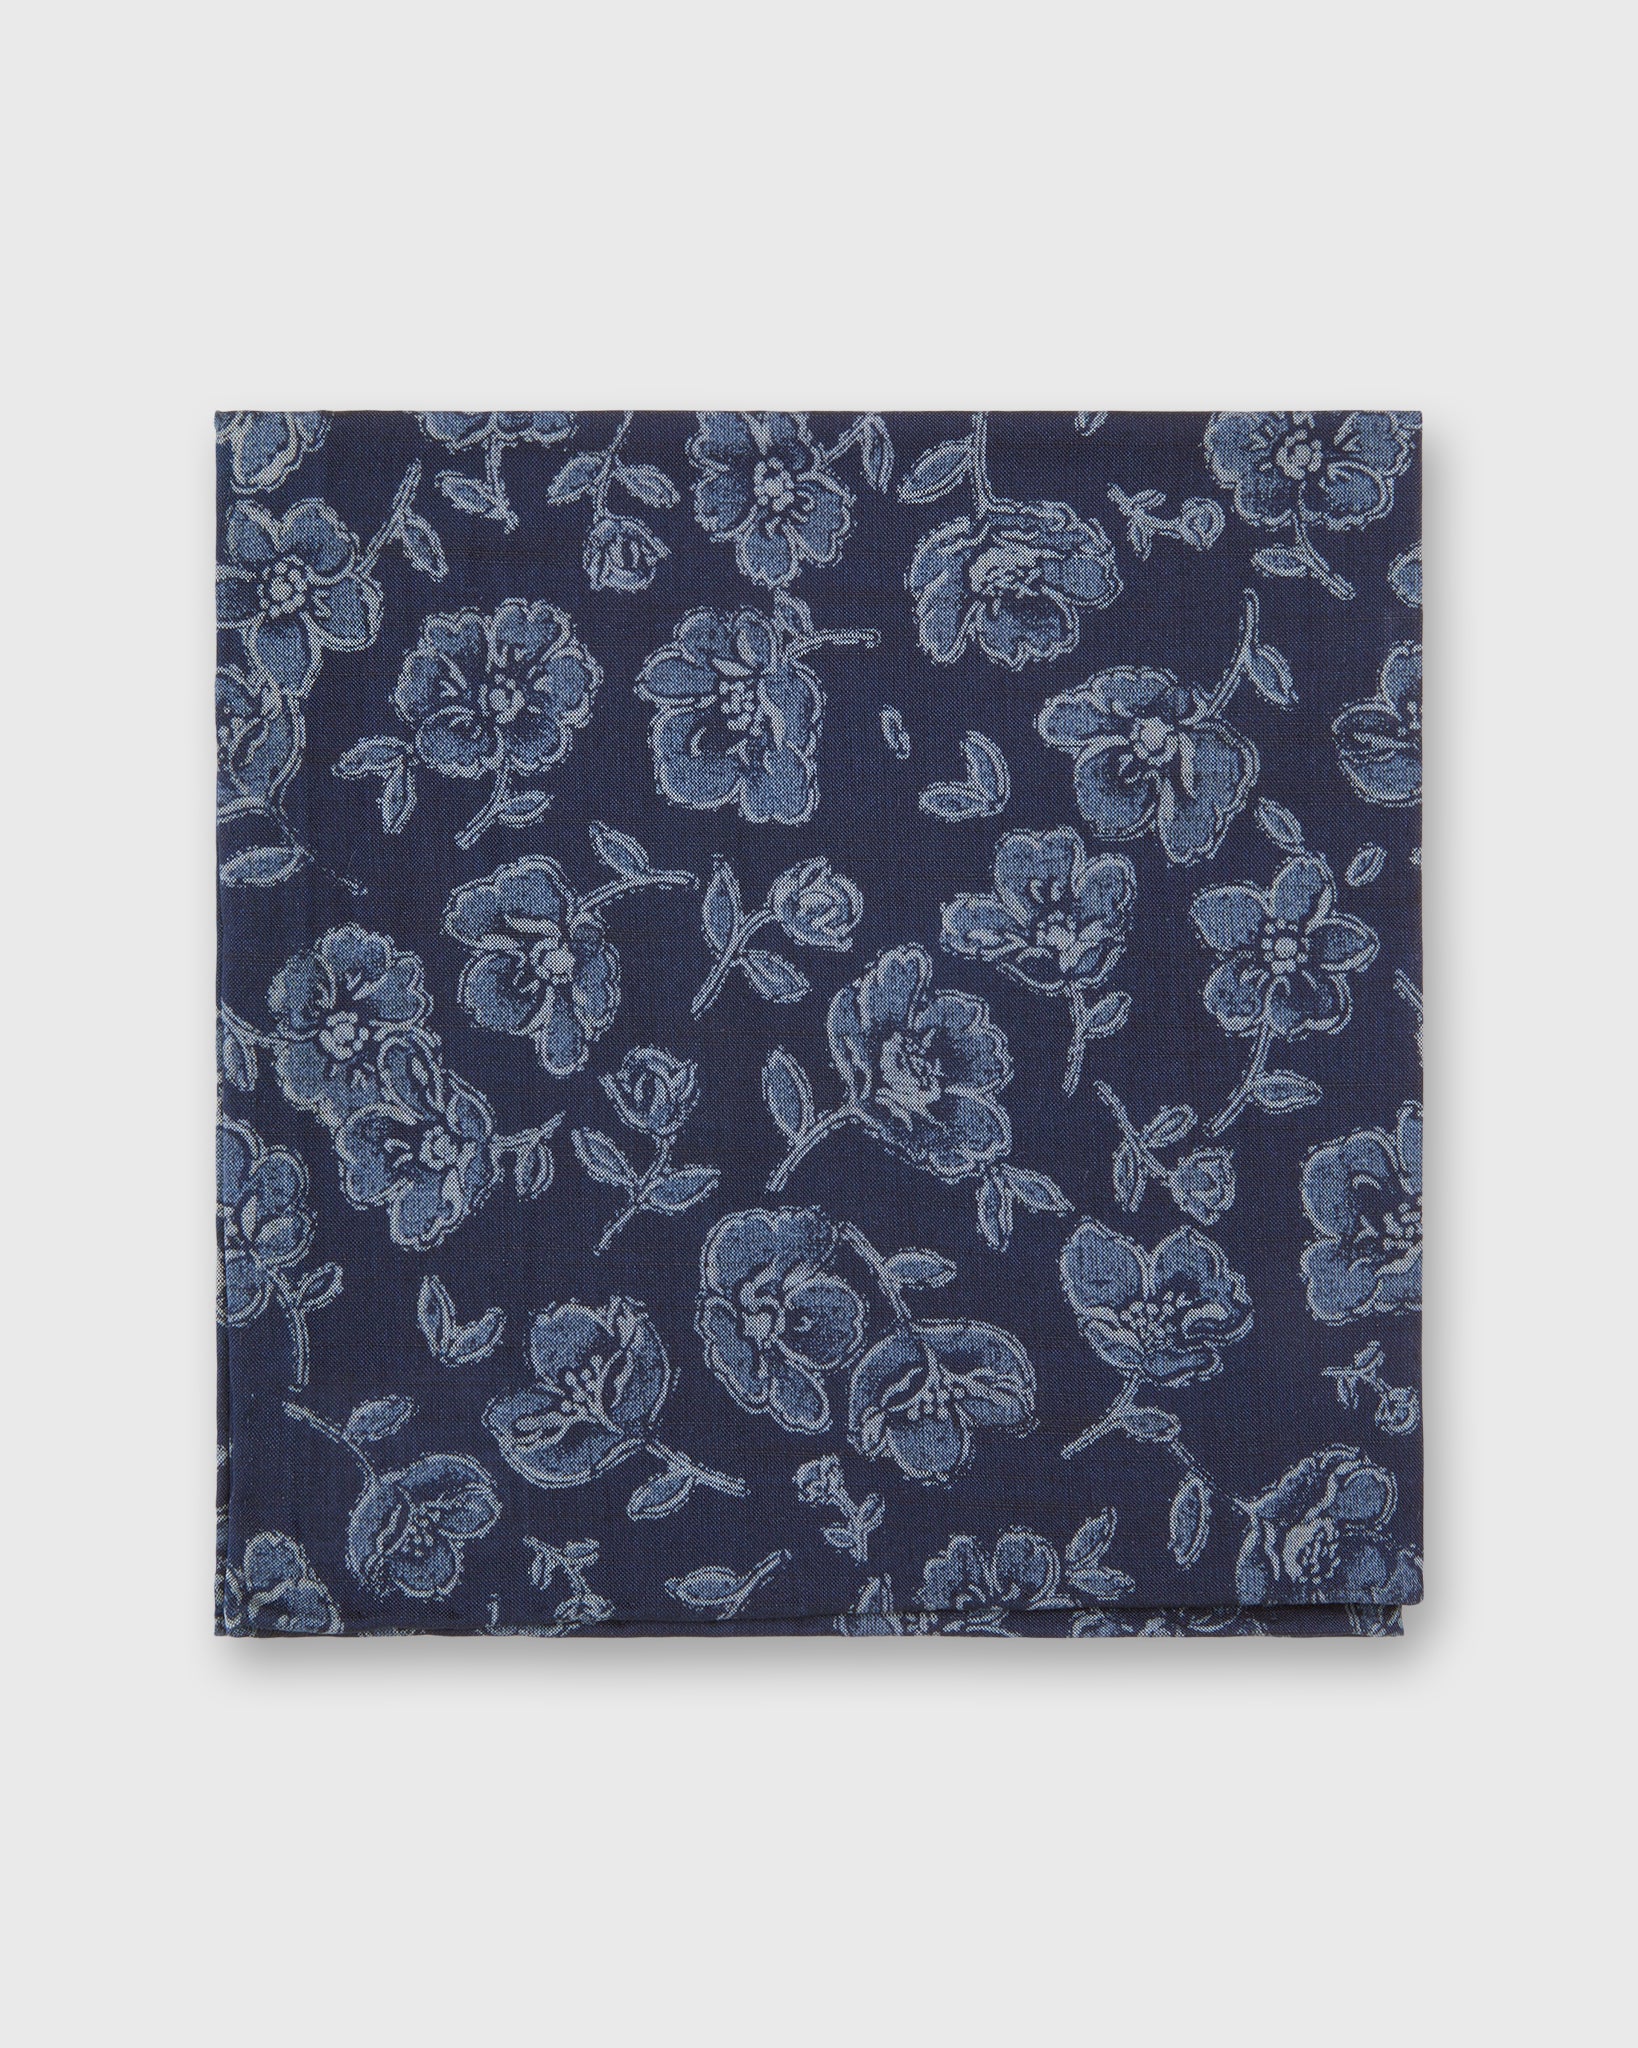 Cotton Print Pocket Square in Navy/Slate/Grey Floral Print Poplin